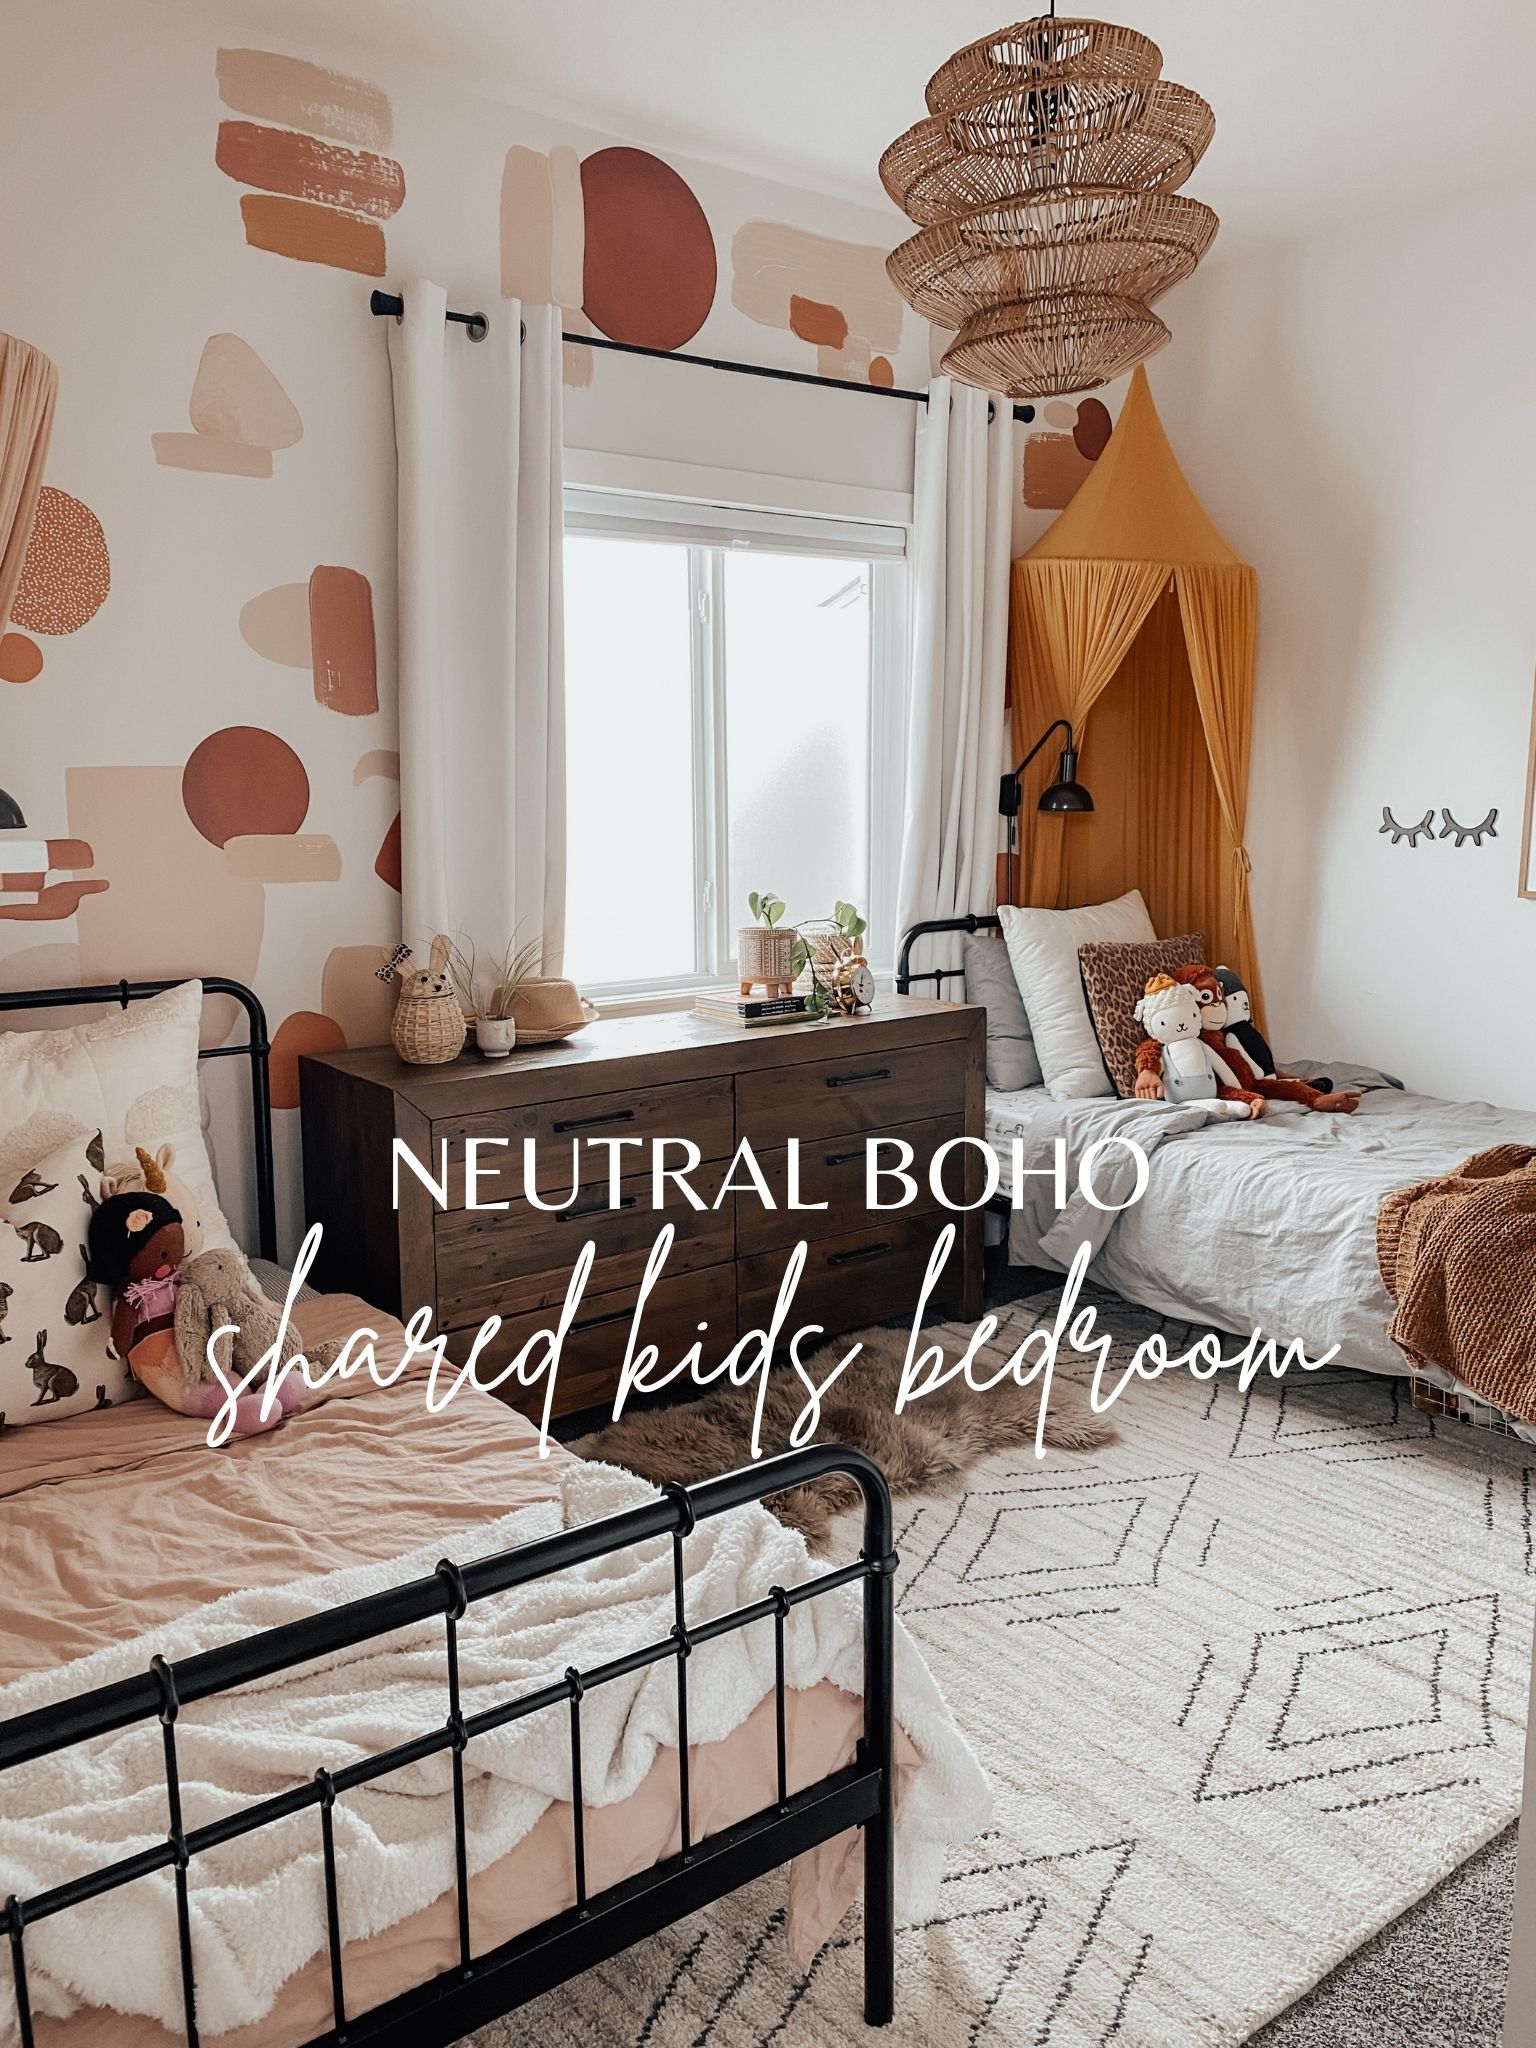 33 Boho Bedroom Ideas - How to Use Boho Style in Bedroom Decor